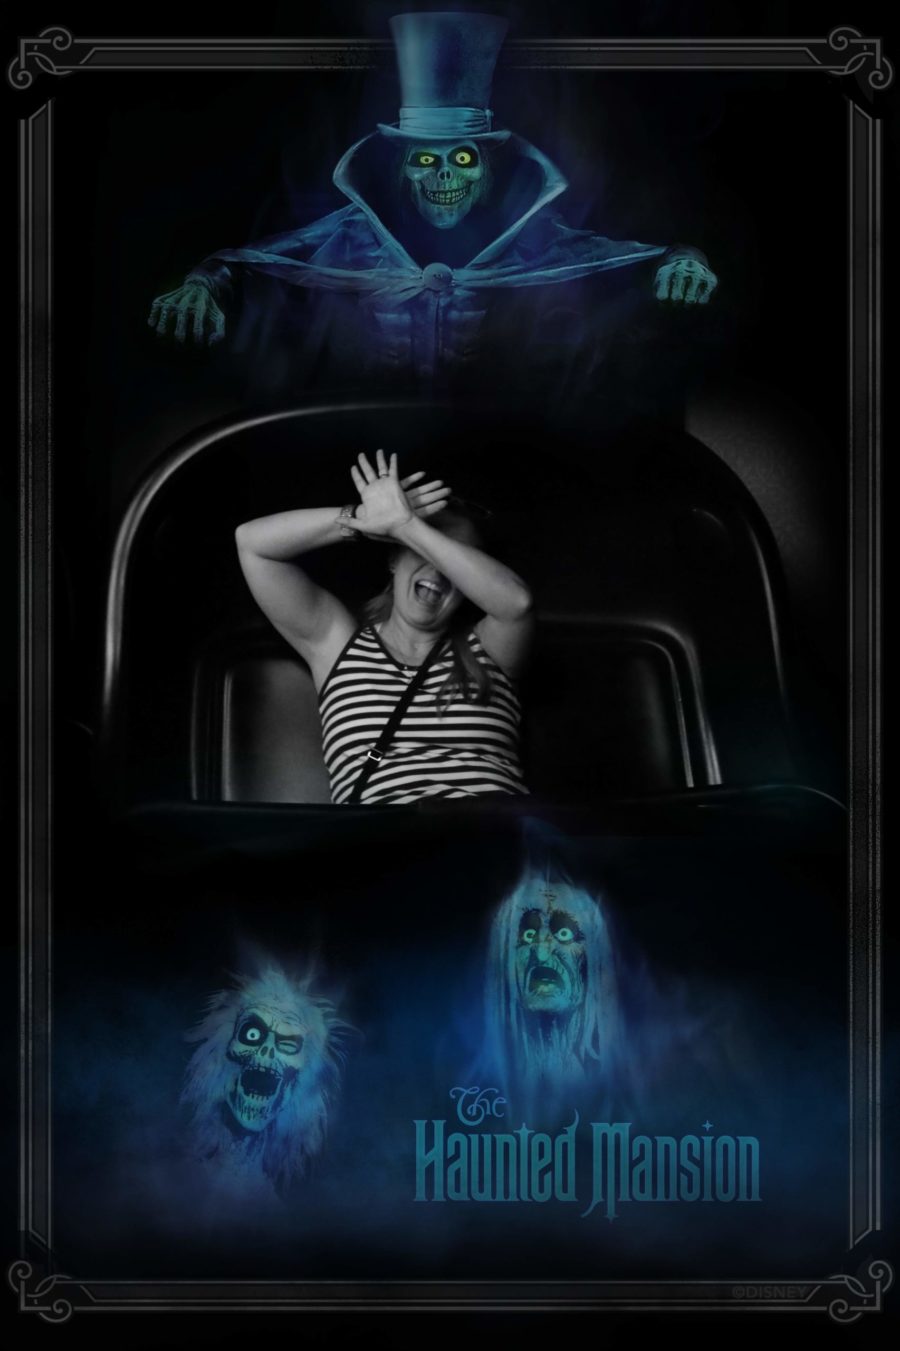 Photopass at Magic Kingdom: Haunted Mansion